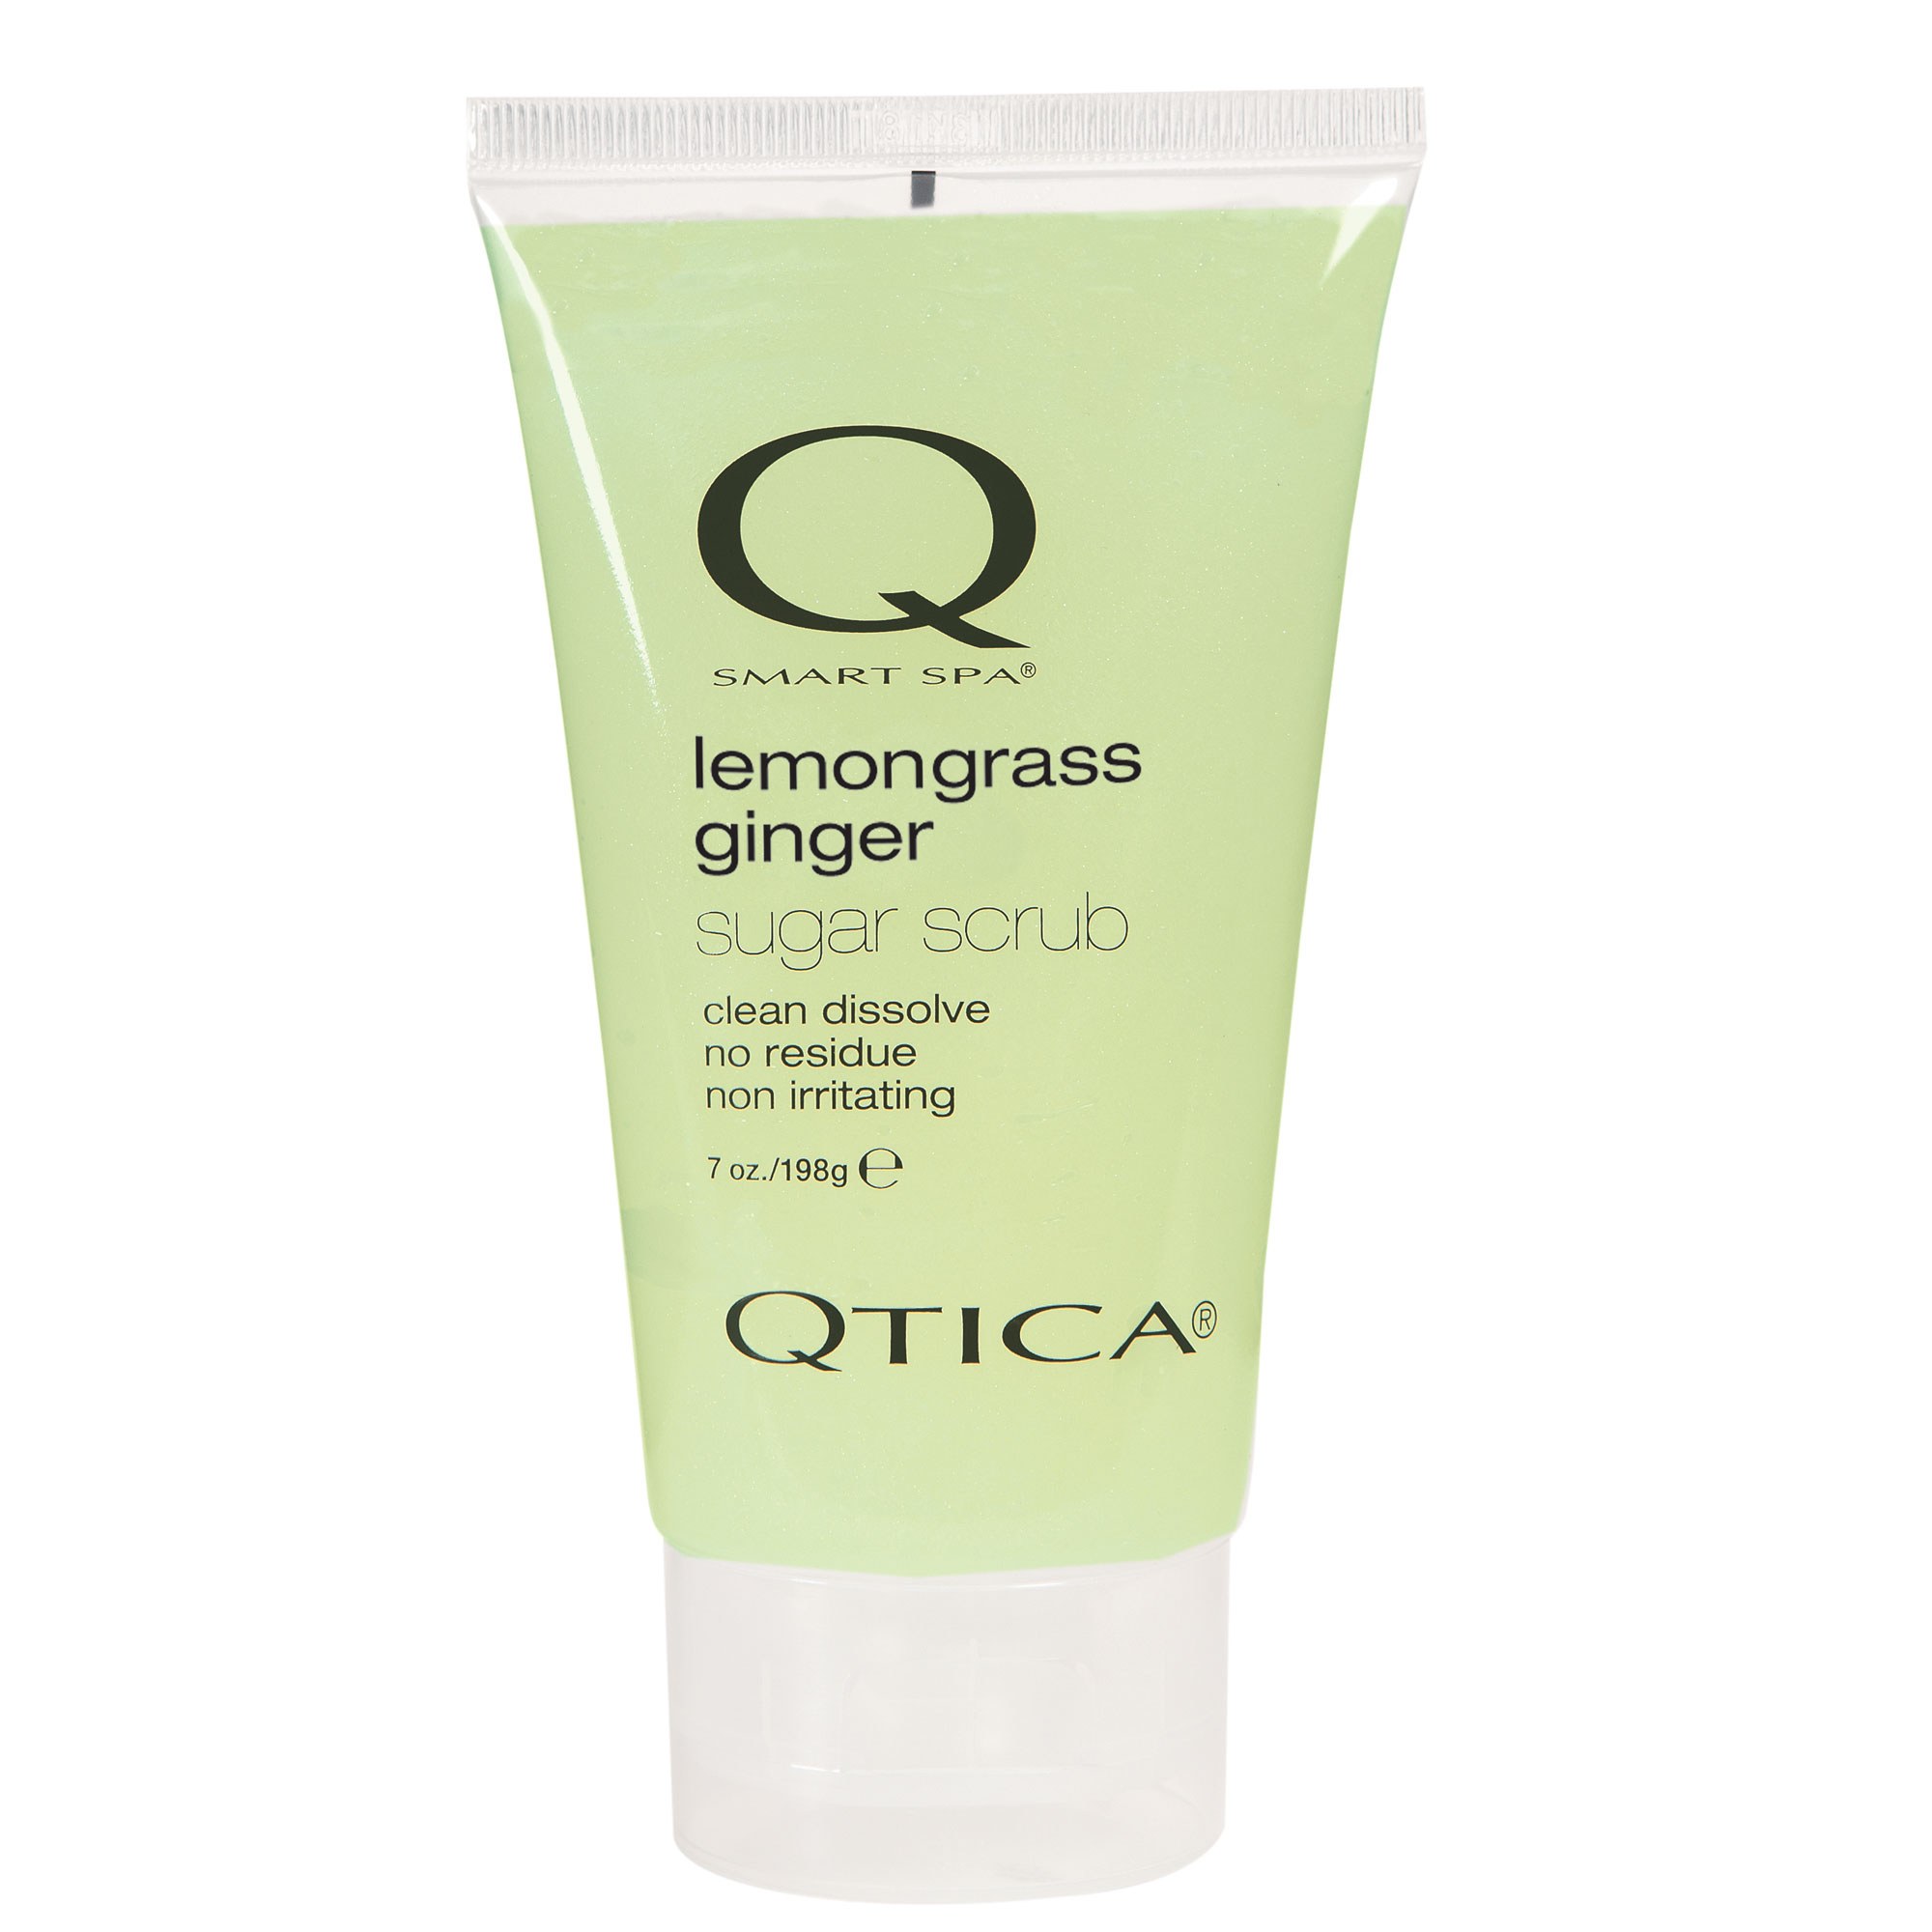 Qtica Smart Spa - Lemongrass Ginger Sugar Scrub 7oz